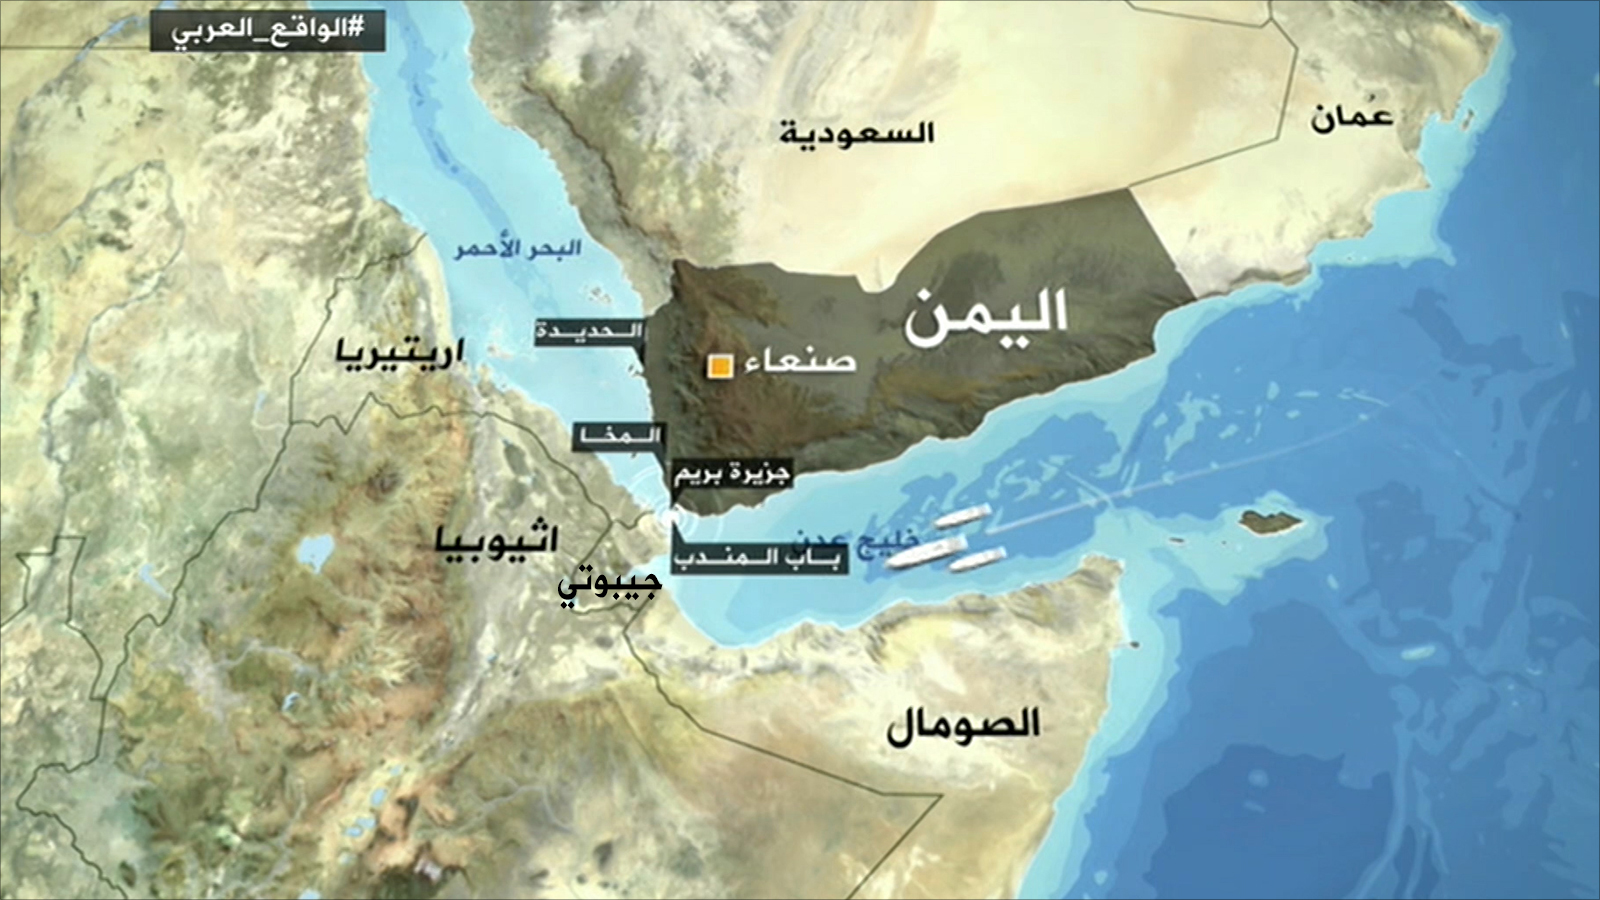 المسافة بين الساحلين اليمني والجيبوتي في نقطة معينة تضيق لثلاثين كيلومترا فقط(الجزيرة)